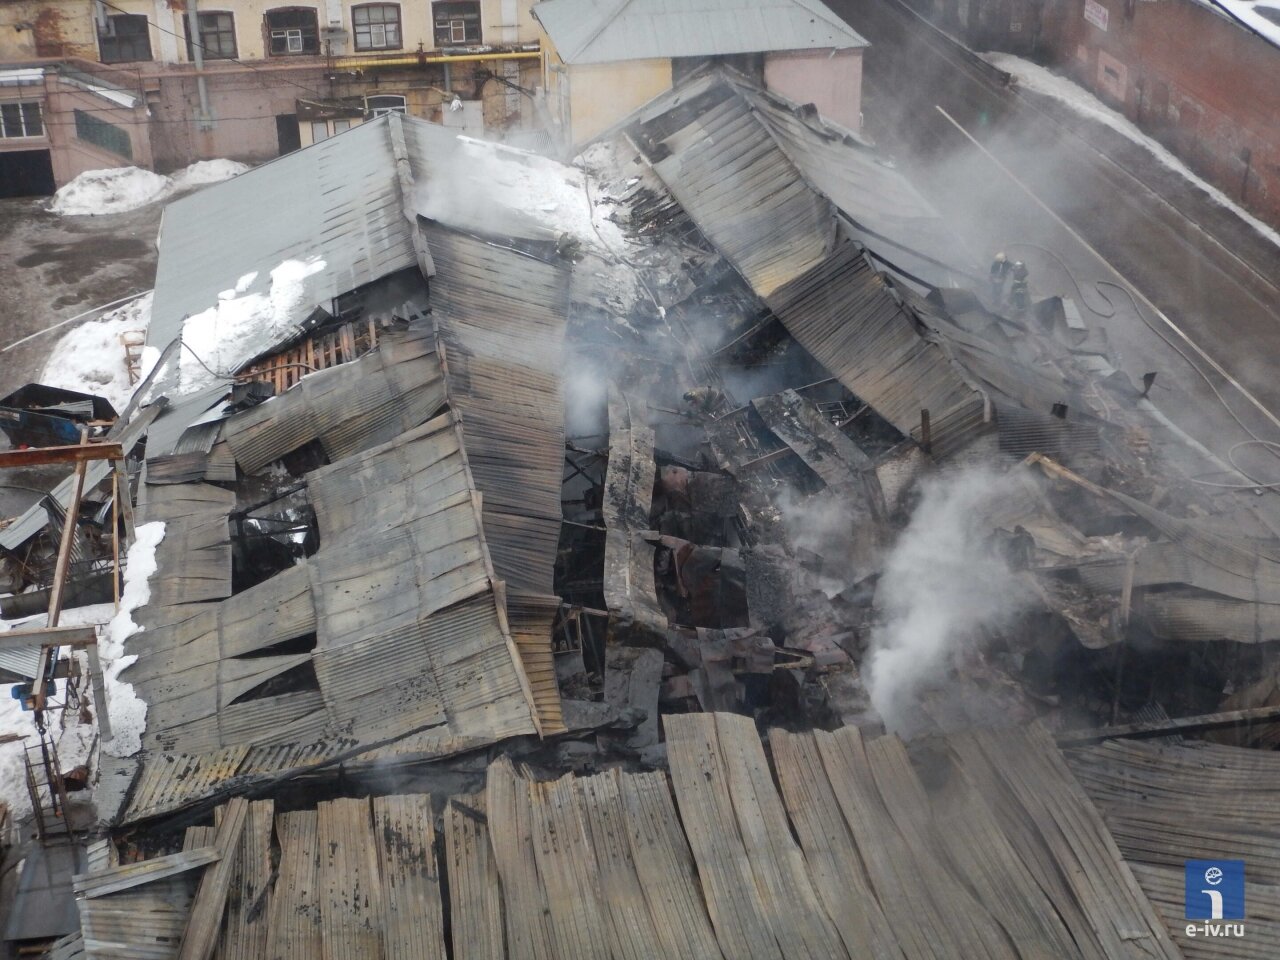 Сгоревшая крыша здания склада, вид сверху, пожар на фабрике, Ивантеевка